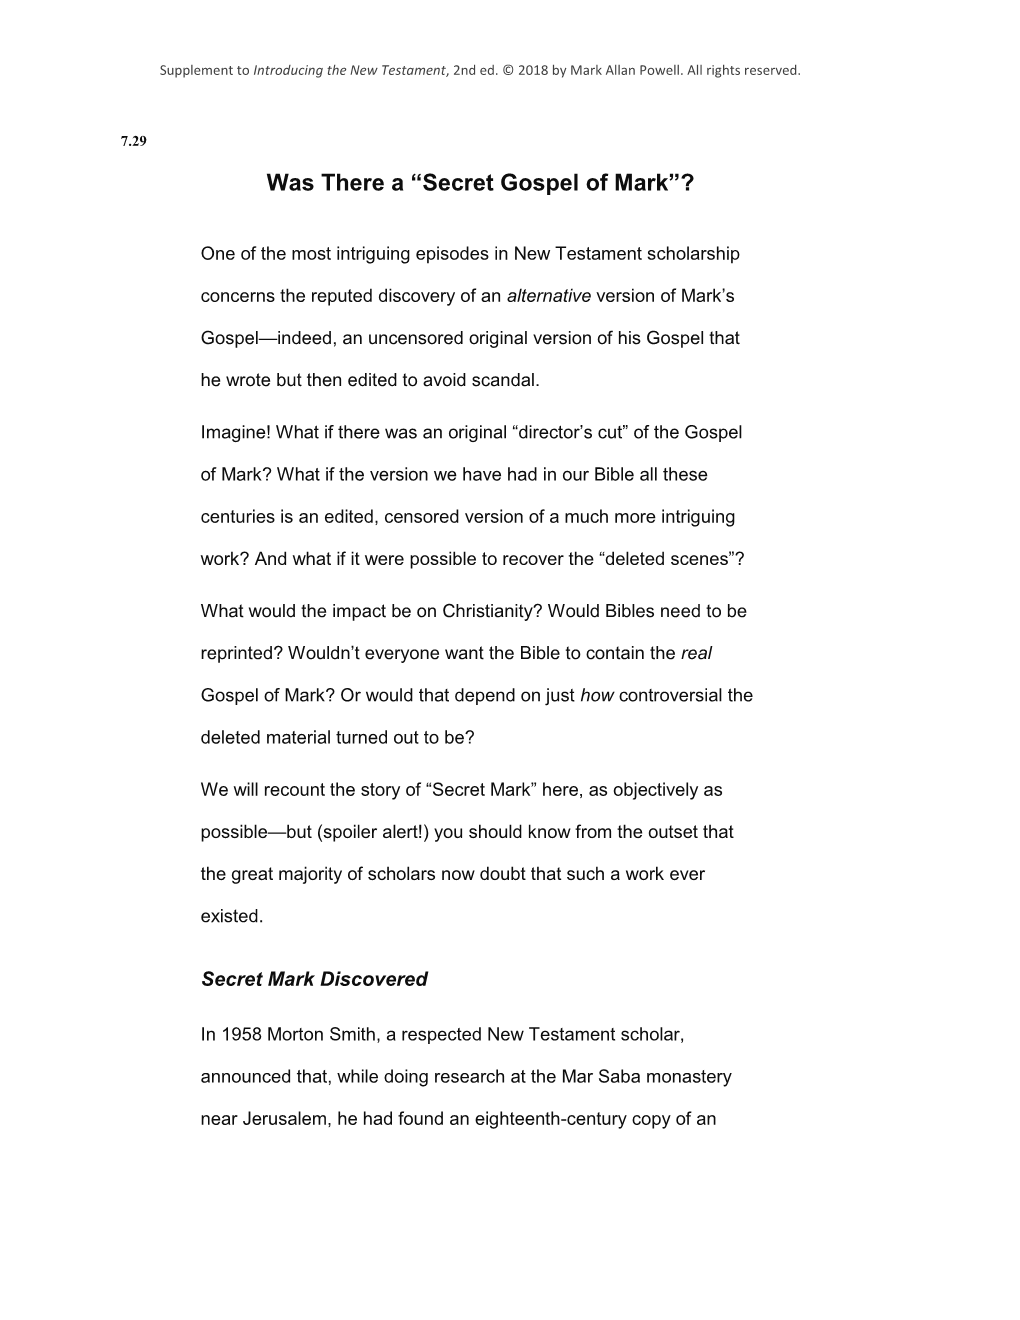 “Secret Gospel of Mark”?